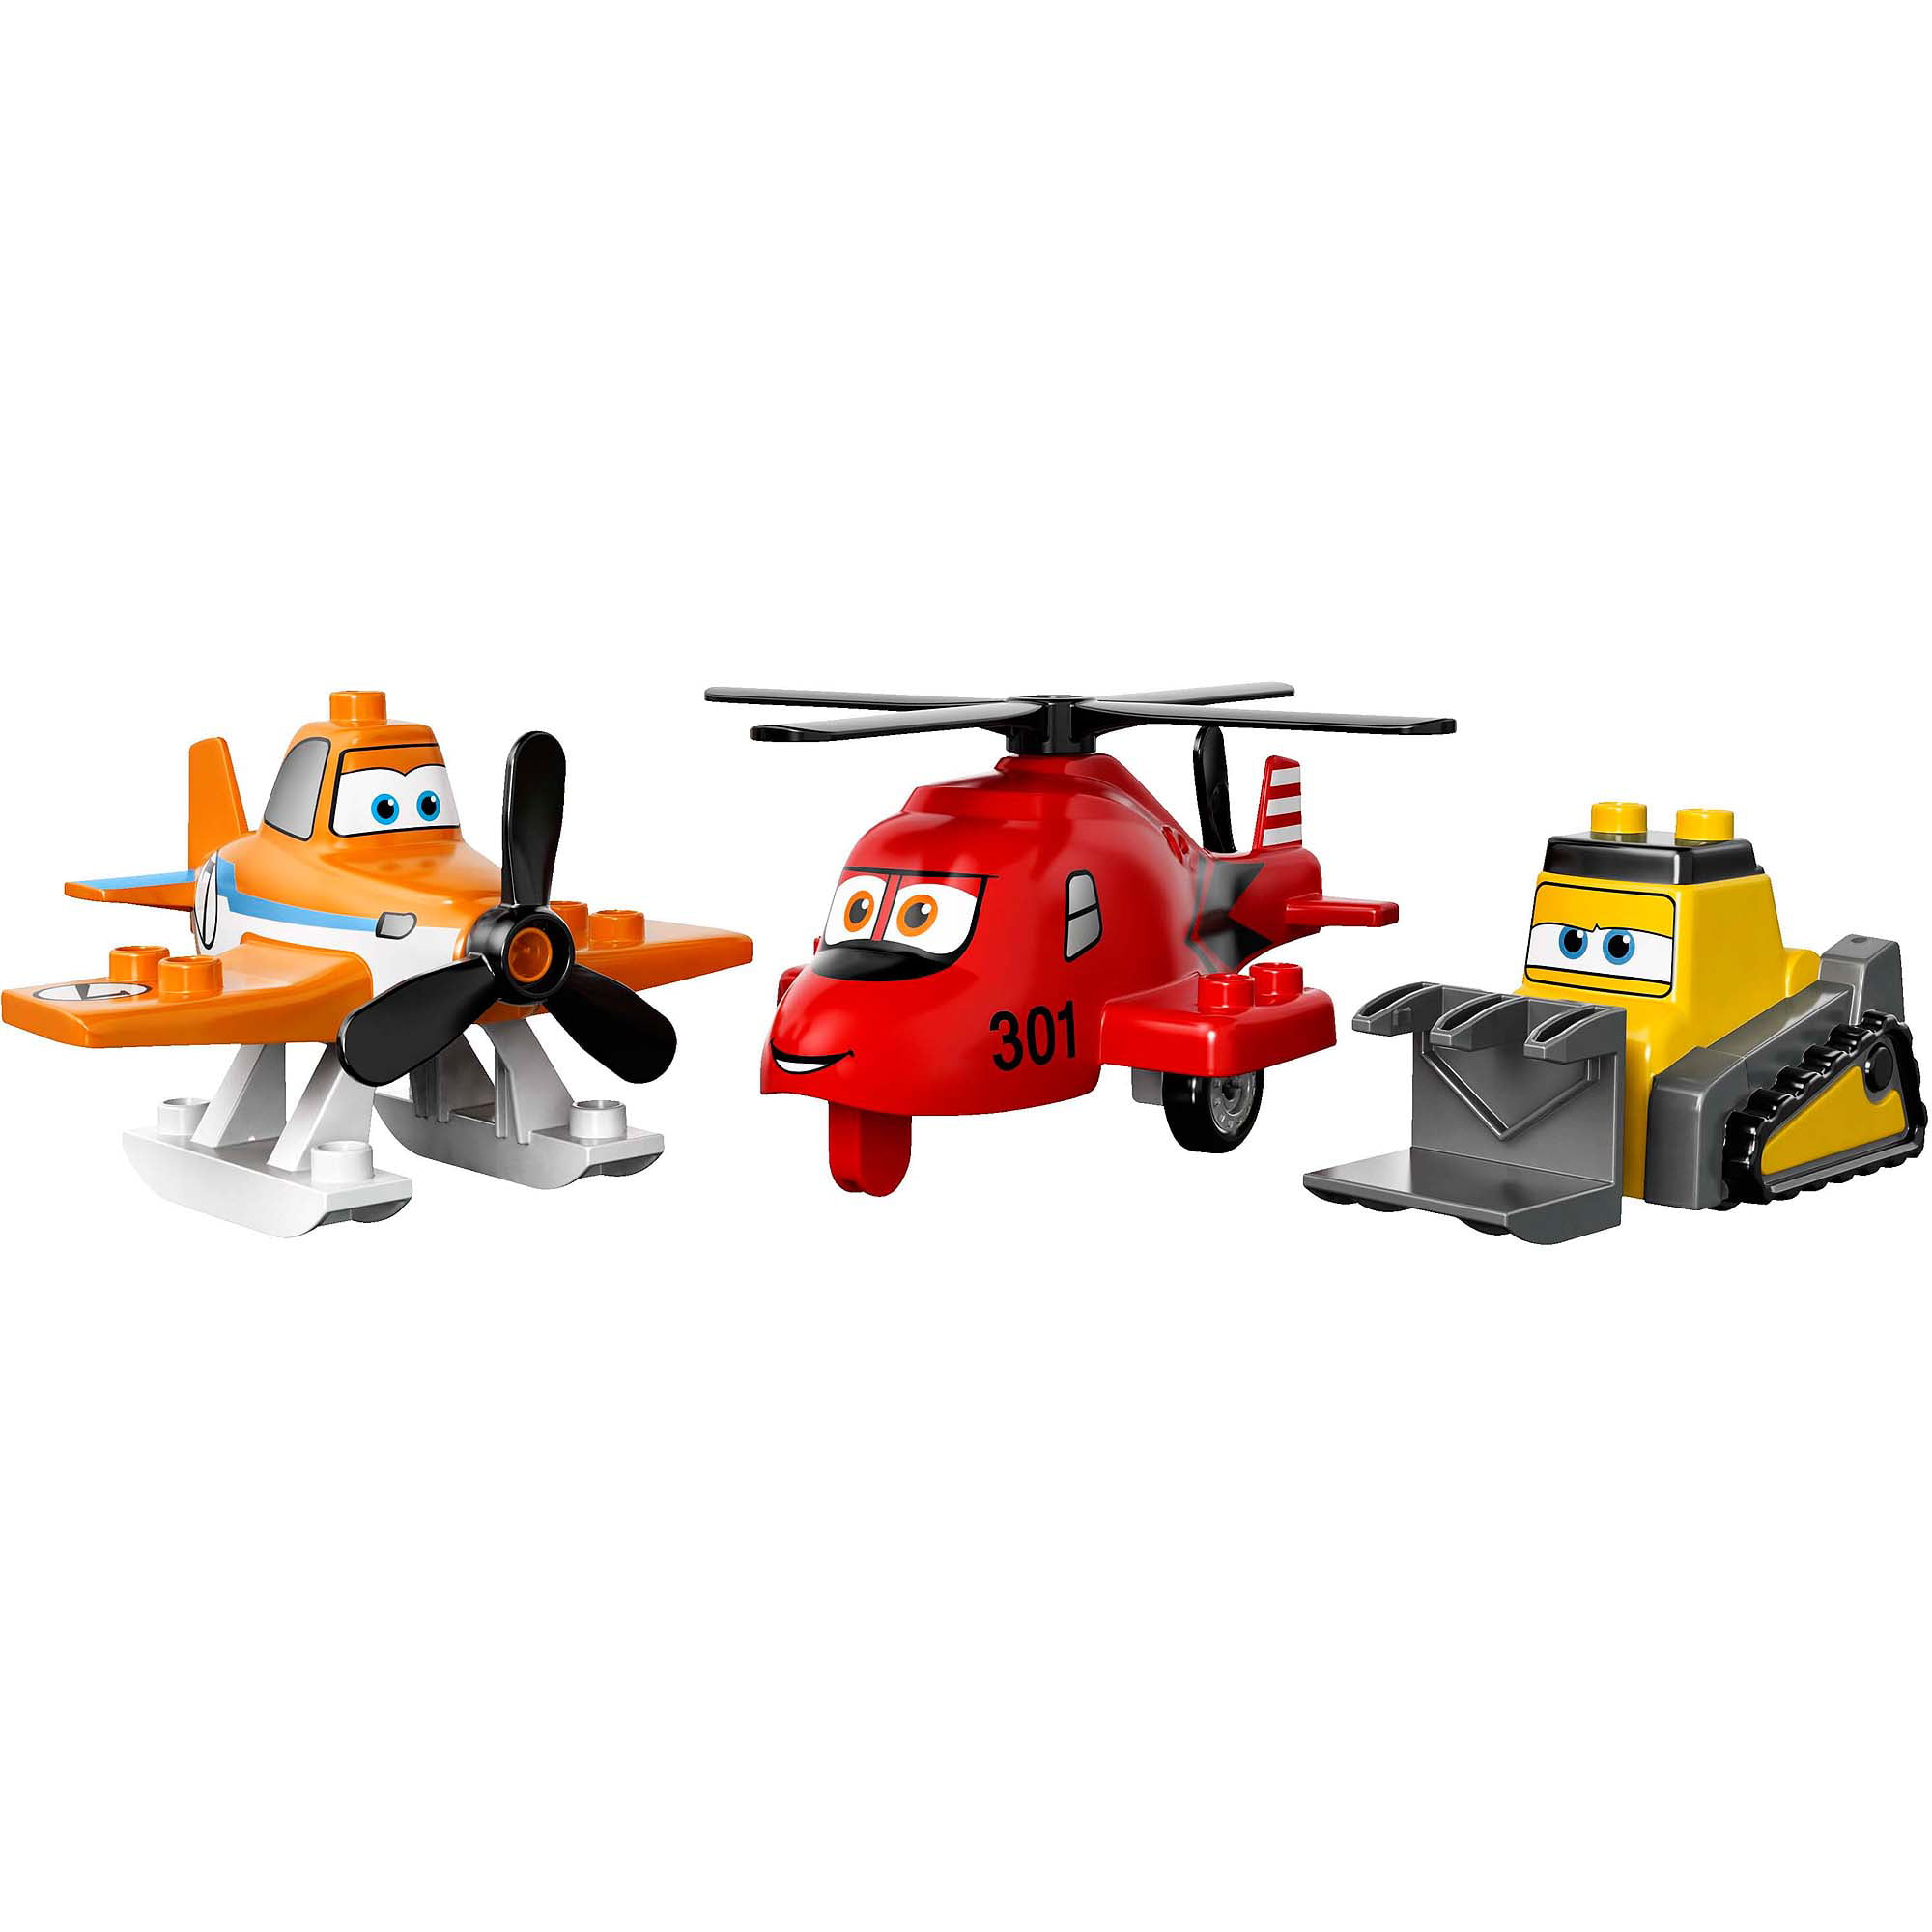 LEGO DUPLO Planes Fire Rescue -